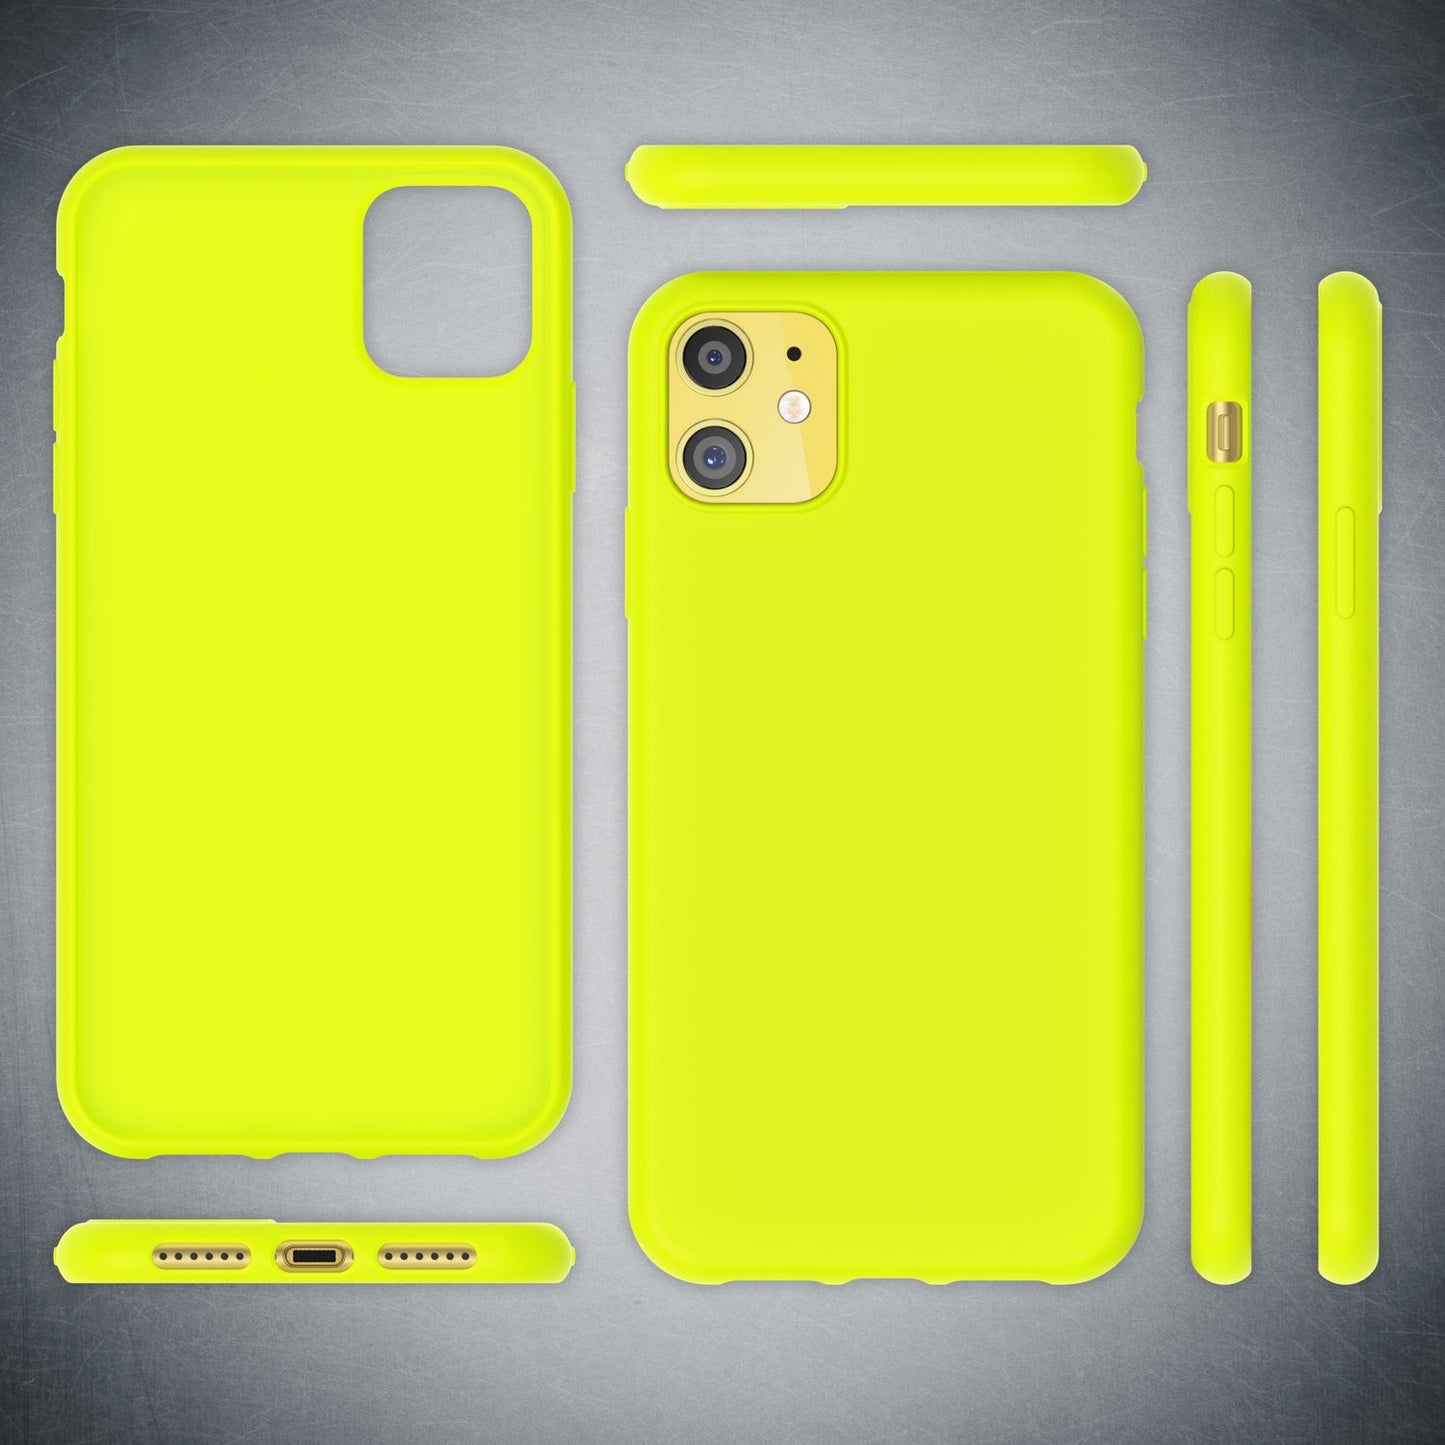 NALIA Neon Handy Hülle für iPhone 11, Soft case & Silikon Bumper Cover Schutz